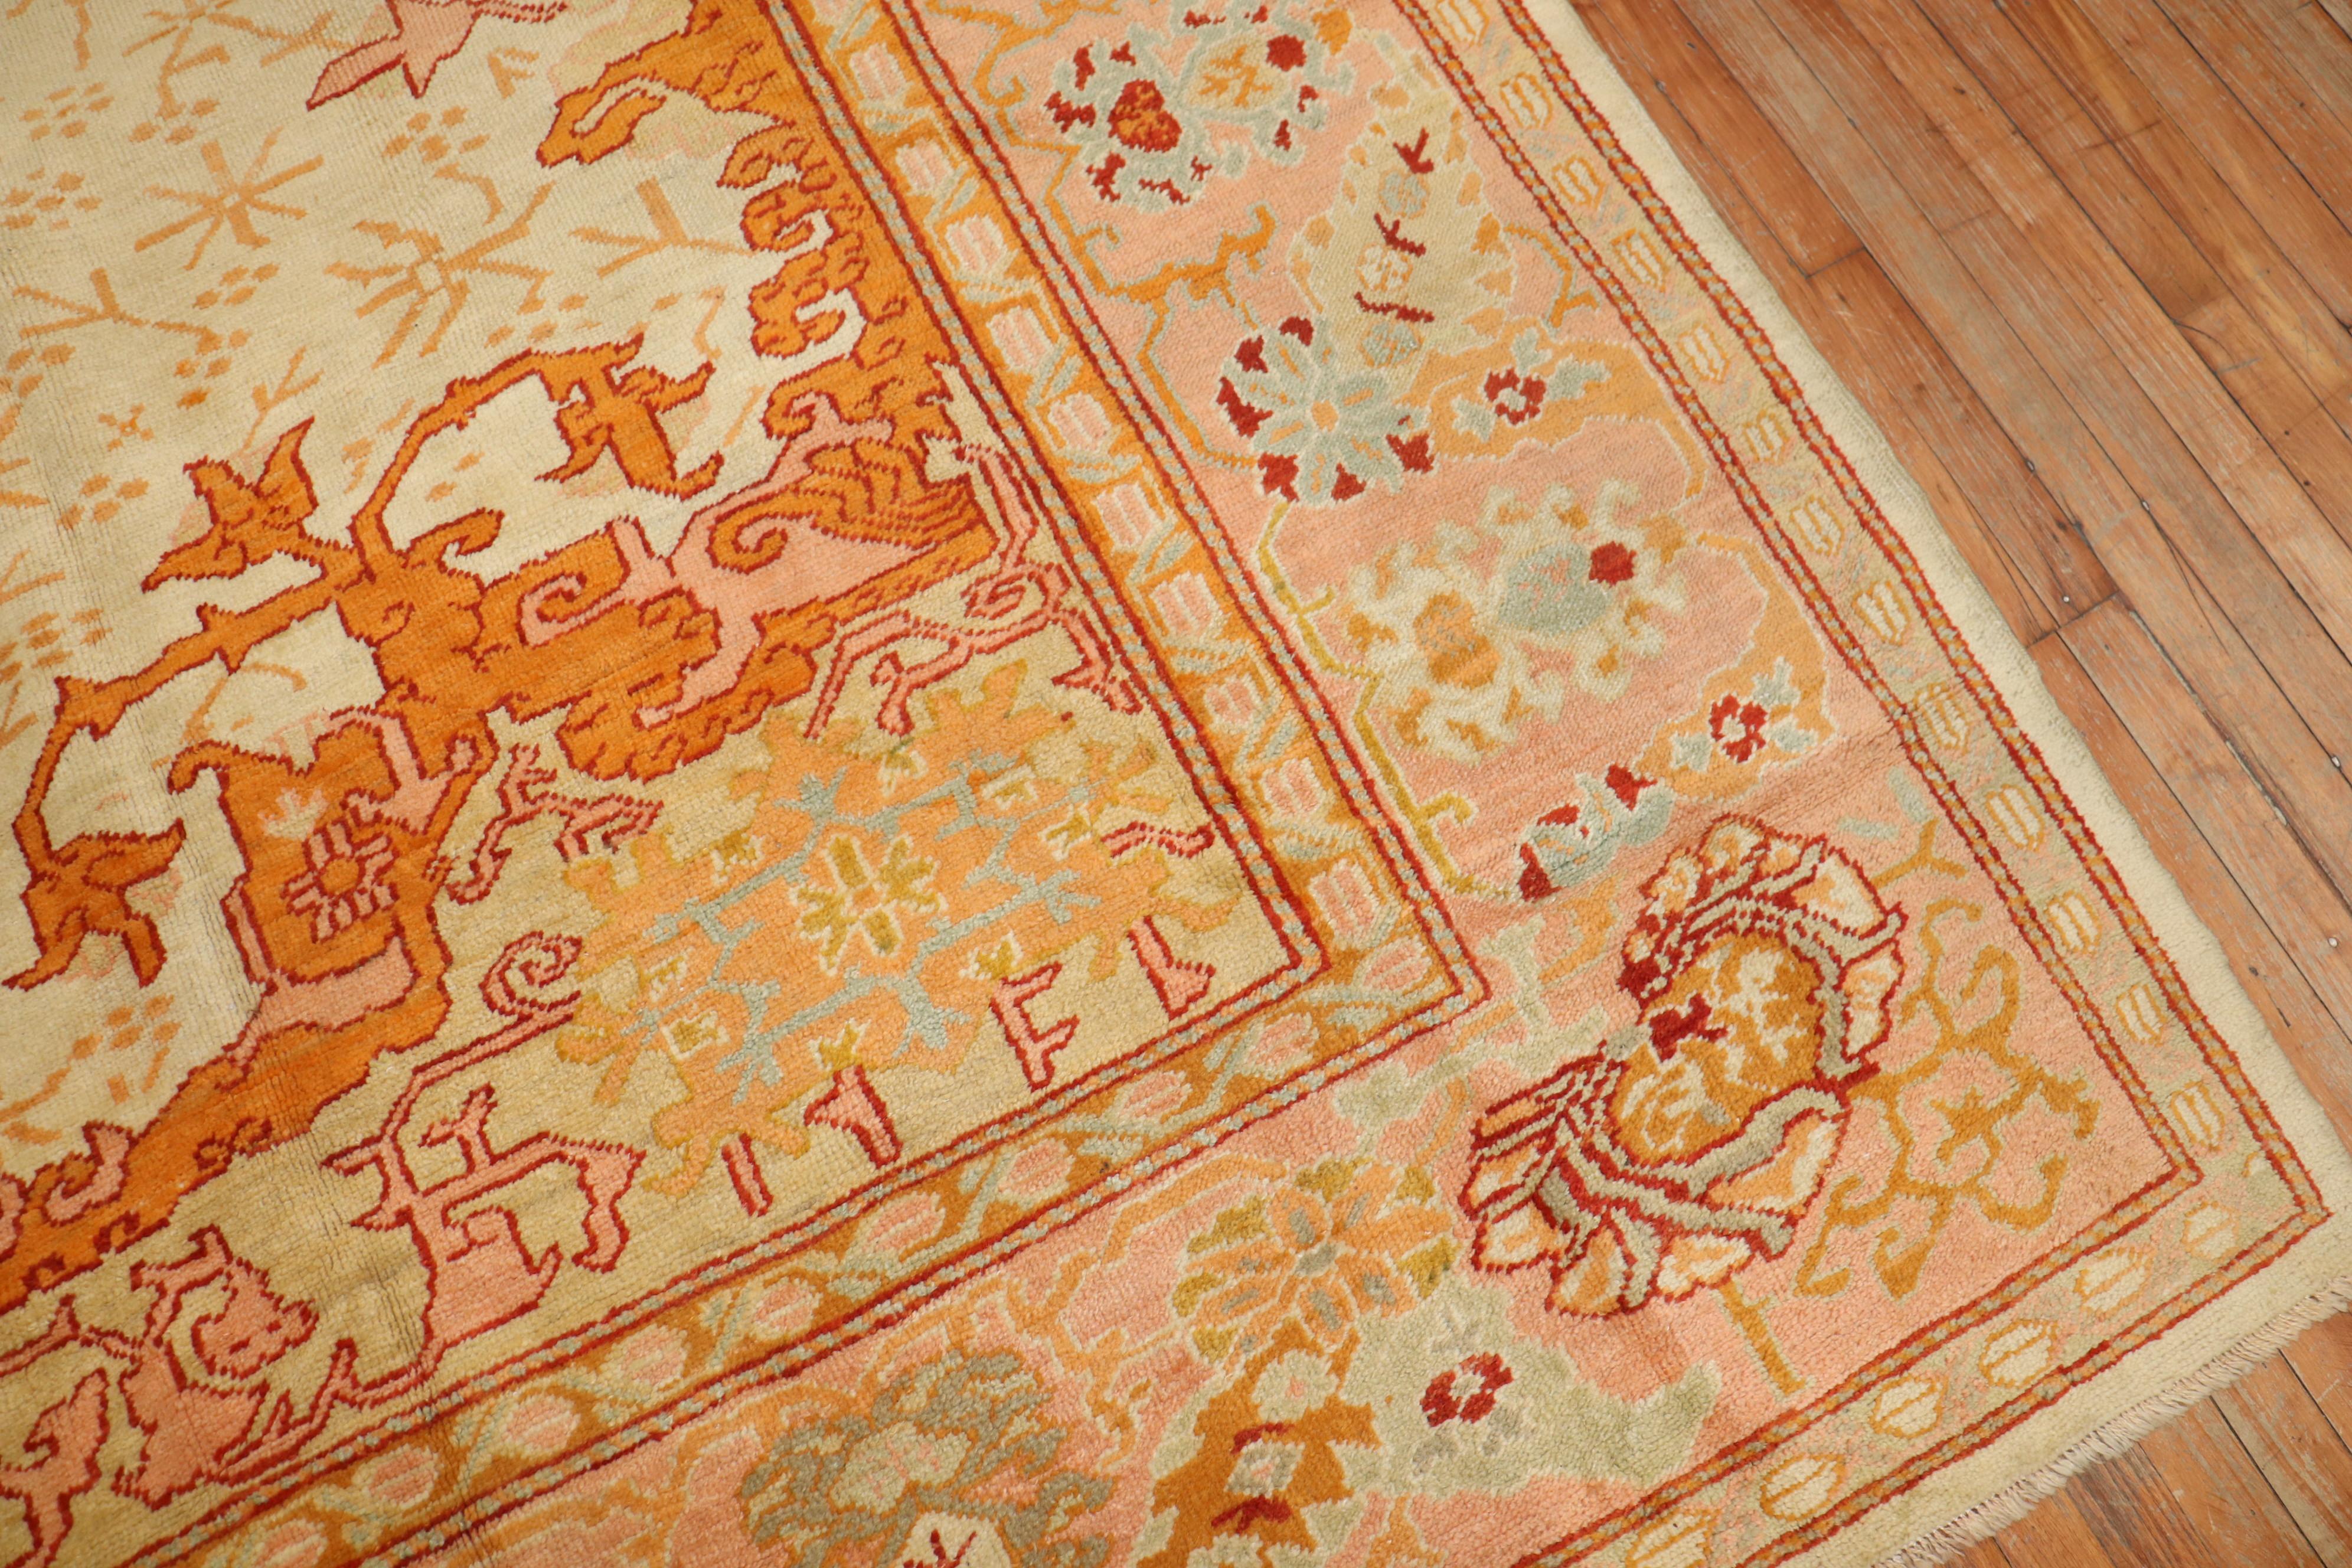 Eine um 1900 authentische  Sehr guter Zustand großformatiger türkischer Oushak-Teppich 

Maße: 11'8'' x 15'6''

Oushak-Teppiche werden wegen ihres reichen Aussehens sowie ihrer hohen Qualität und außergewöhnlichen Schönheit geschätzt, was sie zu